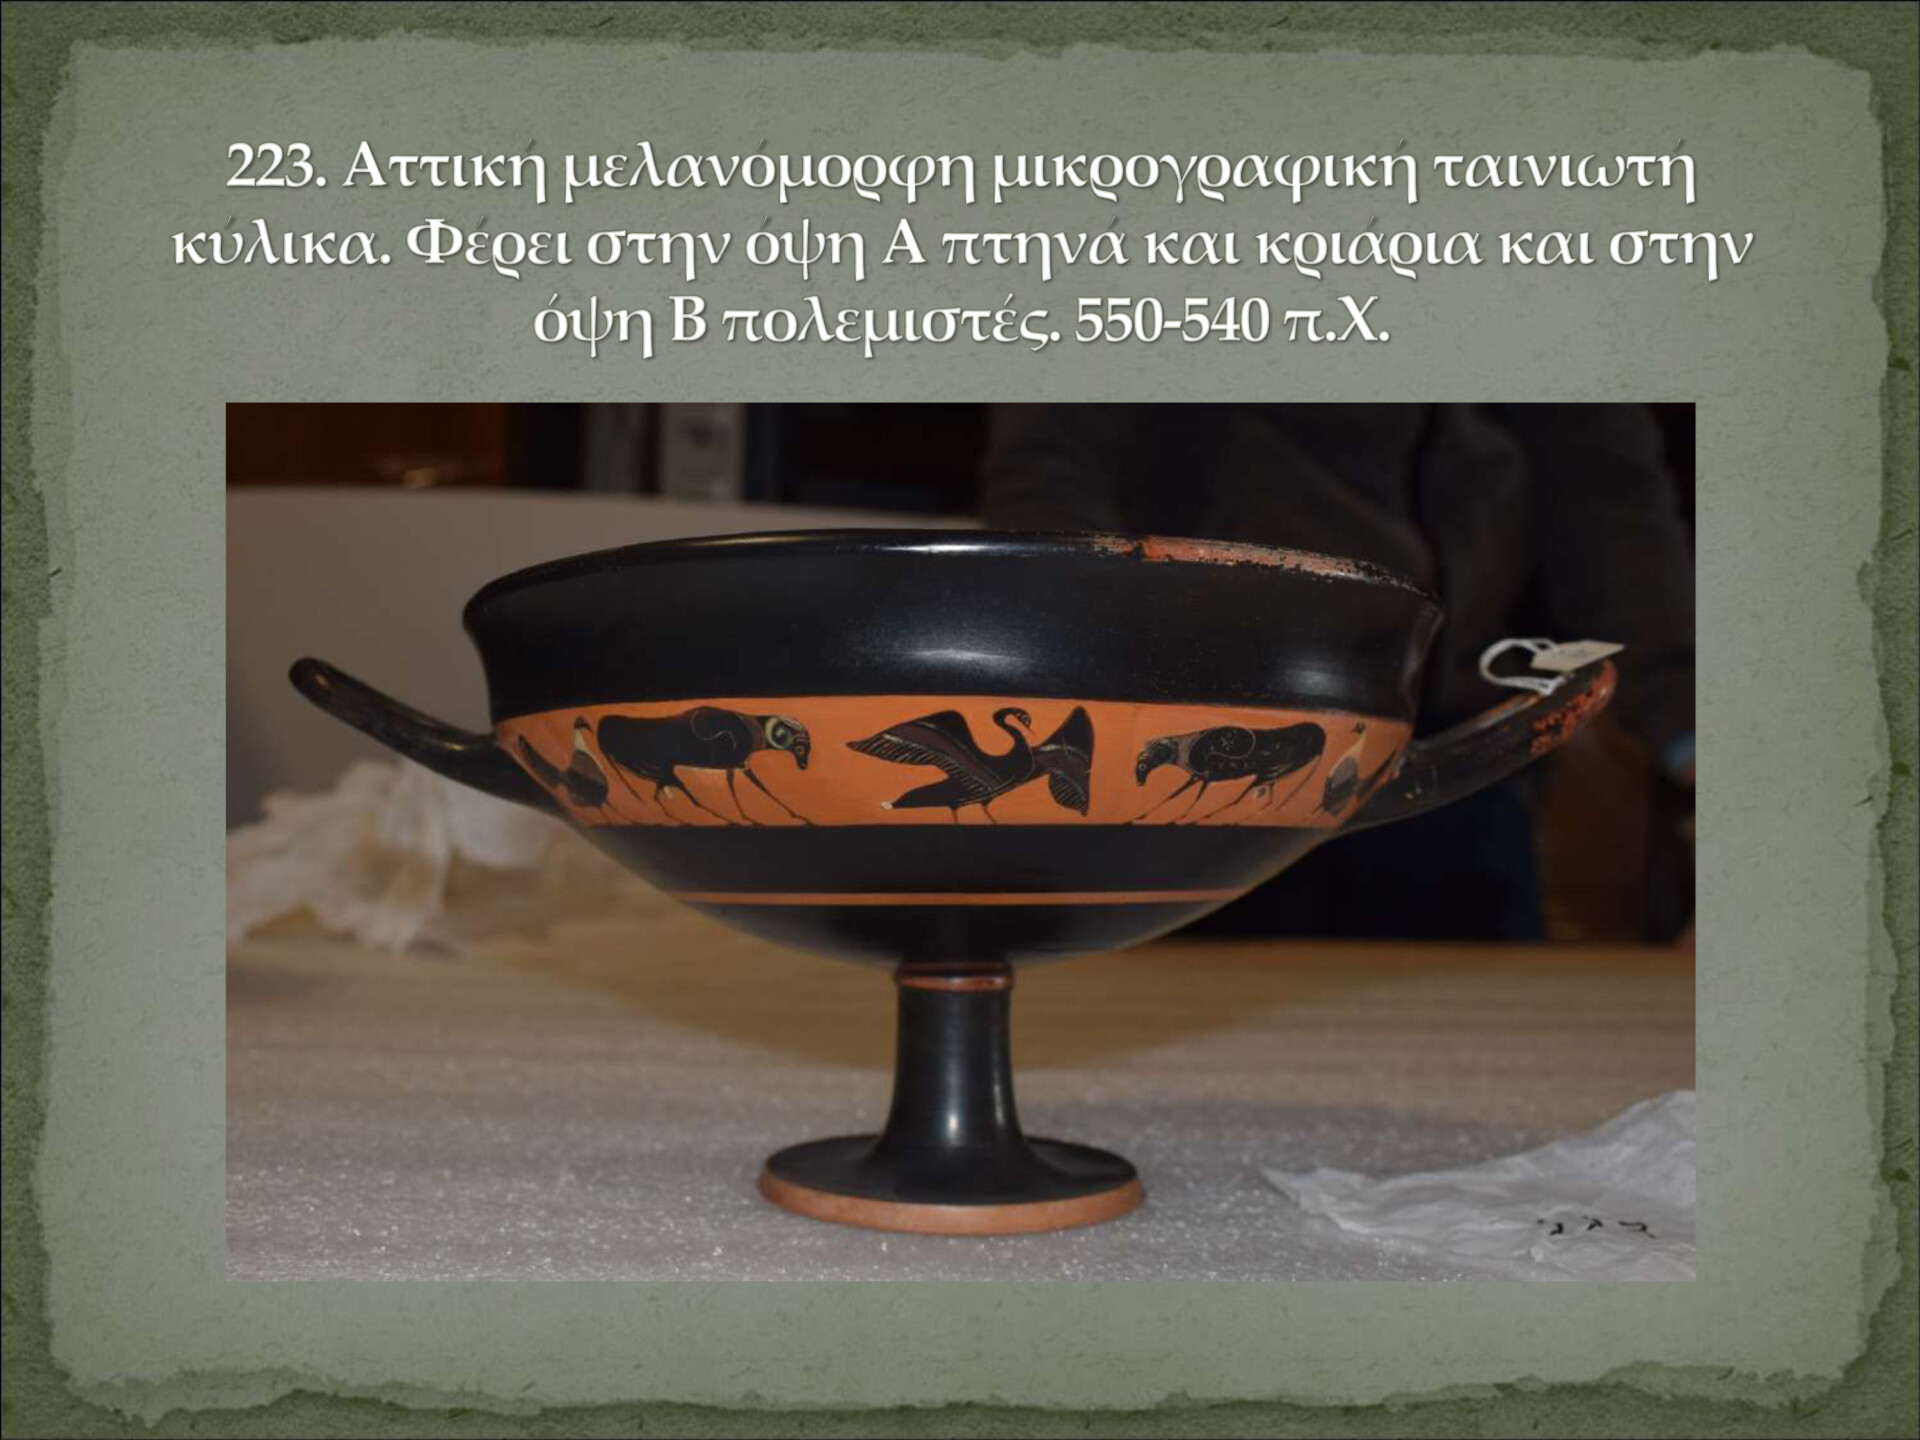 Αρχαία αντικείμενα επαναπατρίστηκαν στην Ελλάδα © Υπουργείο Πολιτισμού